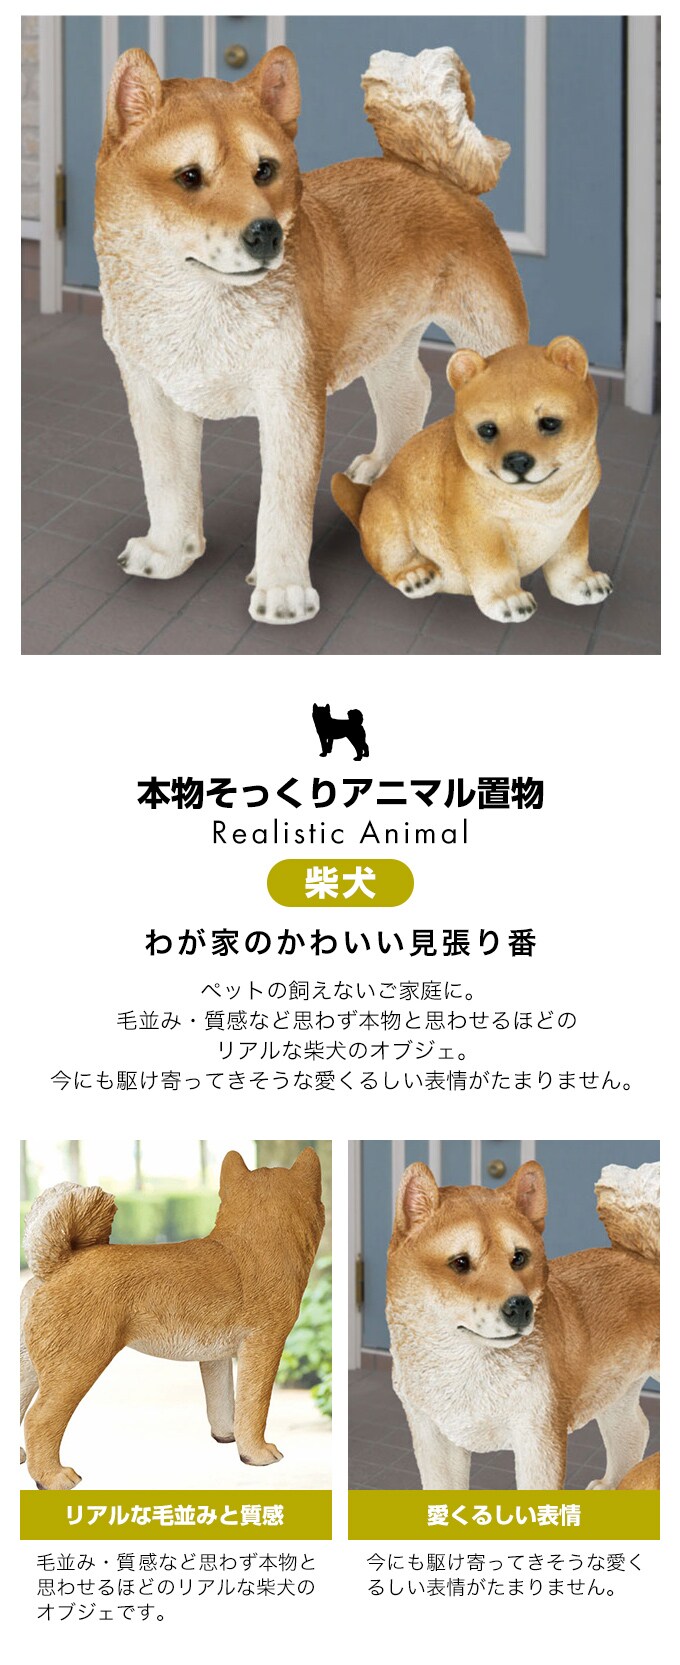 リアルすぎてドキッとするほど本物そっくりな犬のガーデンオーナメント 赤柴 子犬 ワンちゃん好きな人へのプレゼント オブジェ 置物 エンプレットベール(